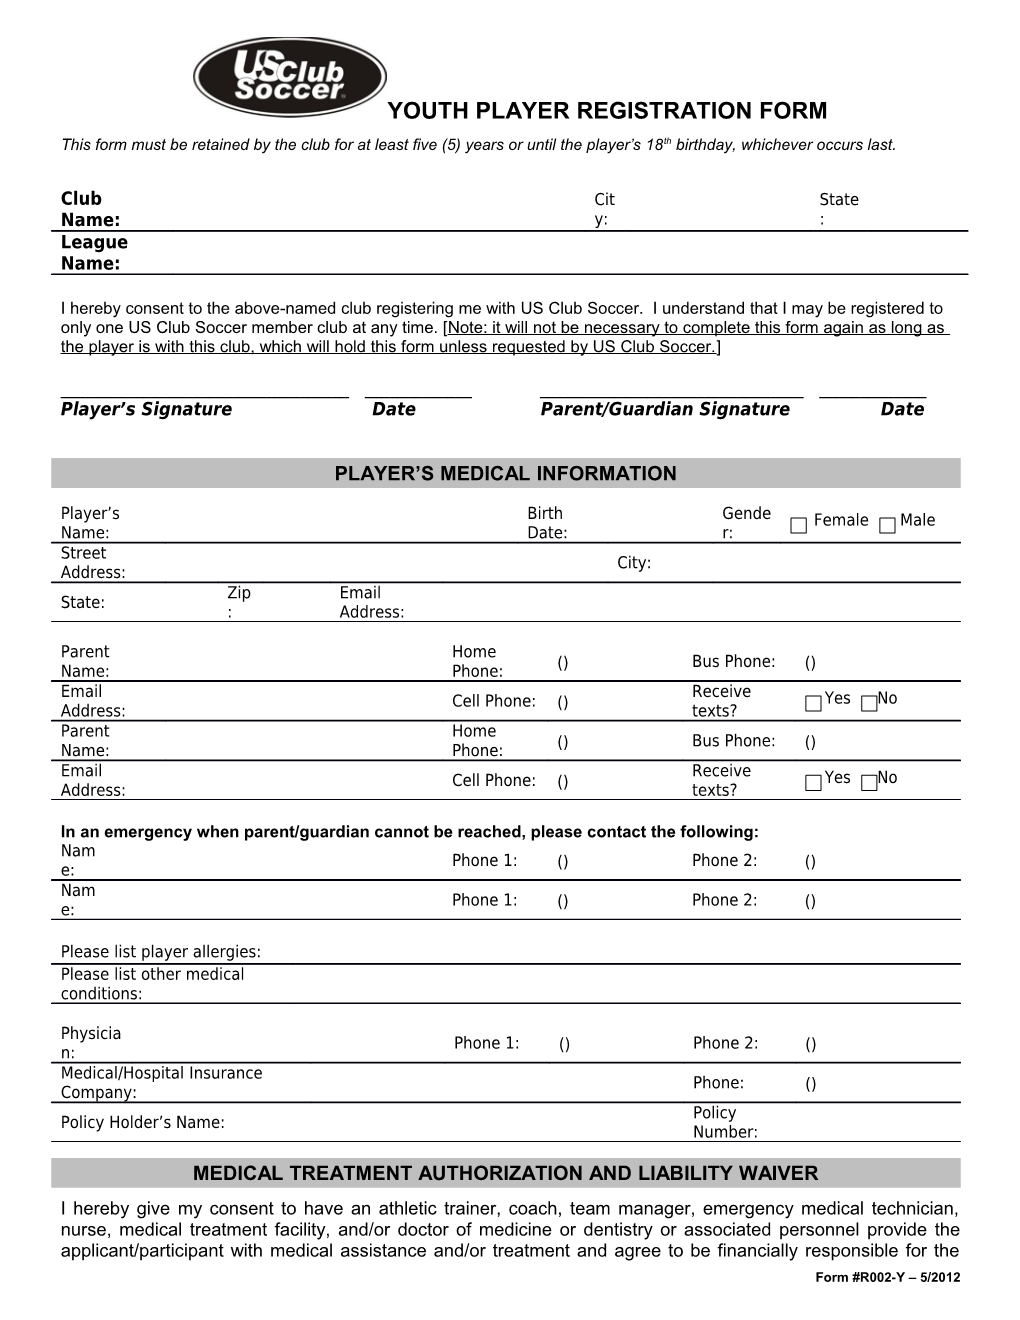 R002-Y - Youth Player Registration Form